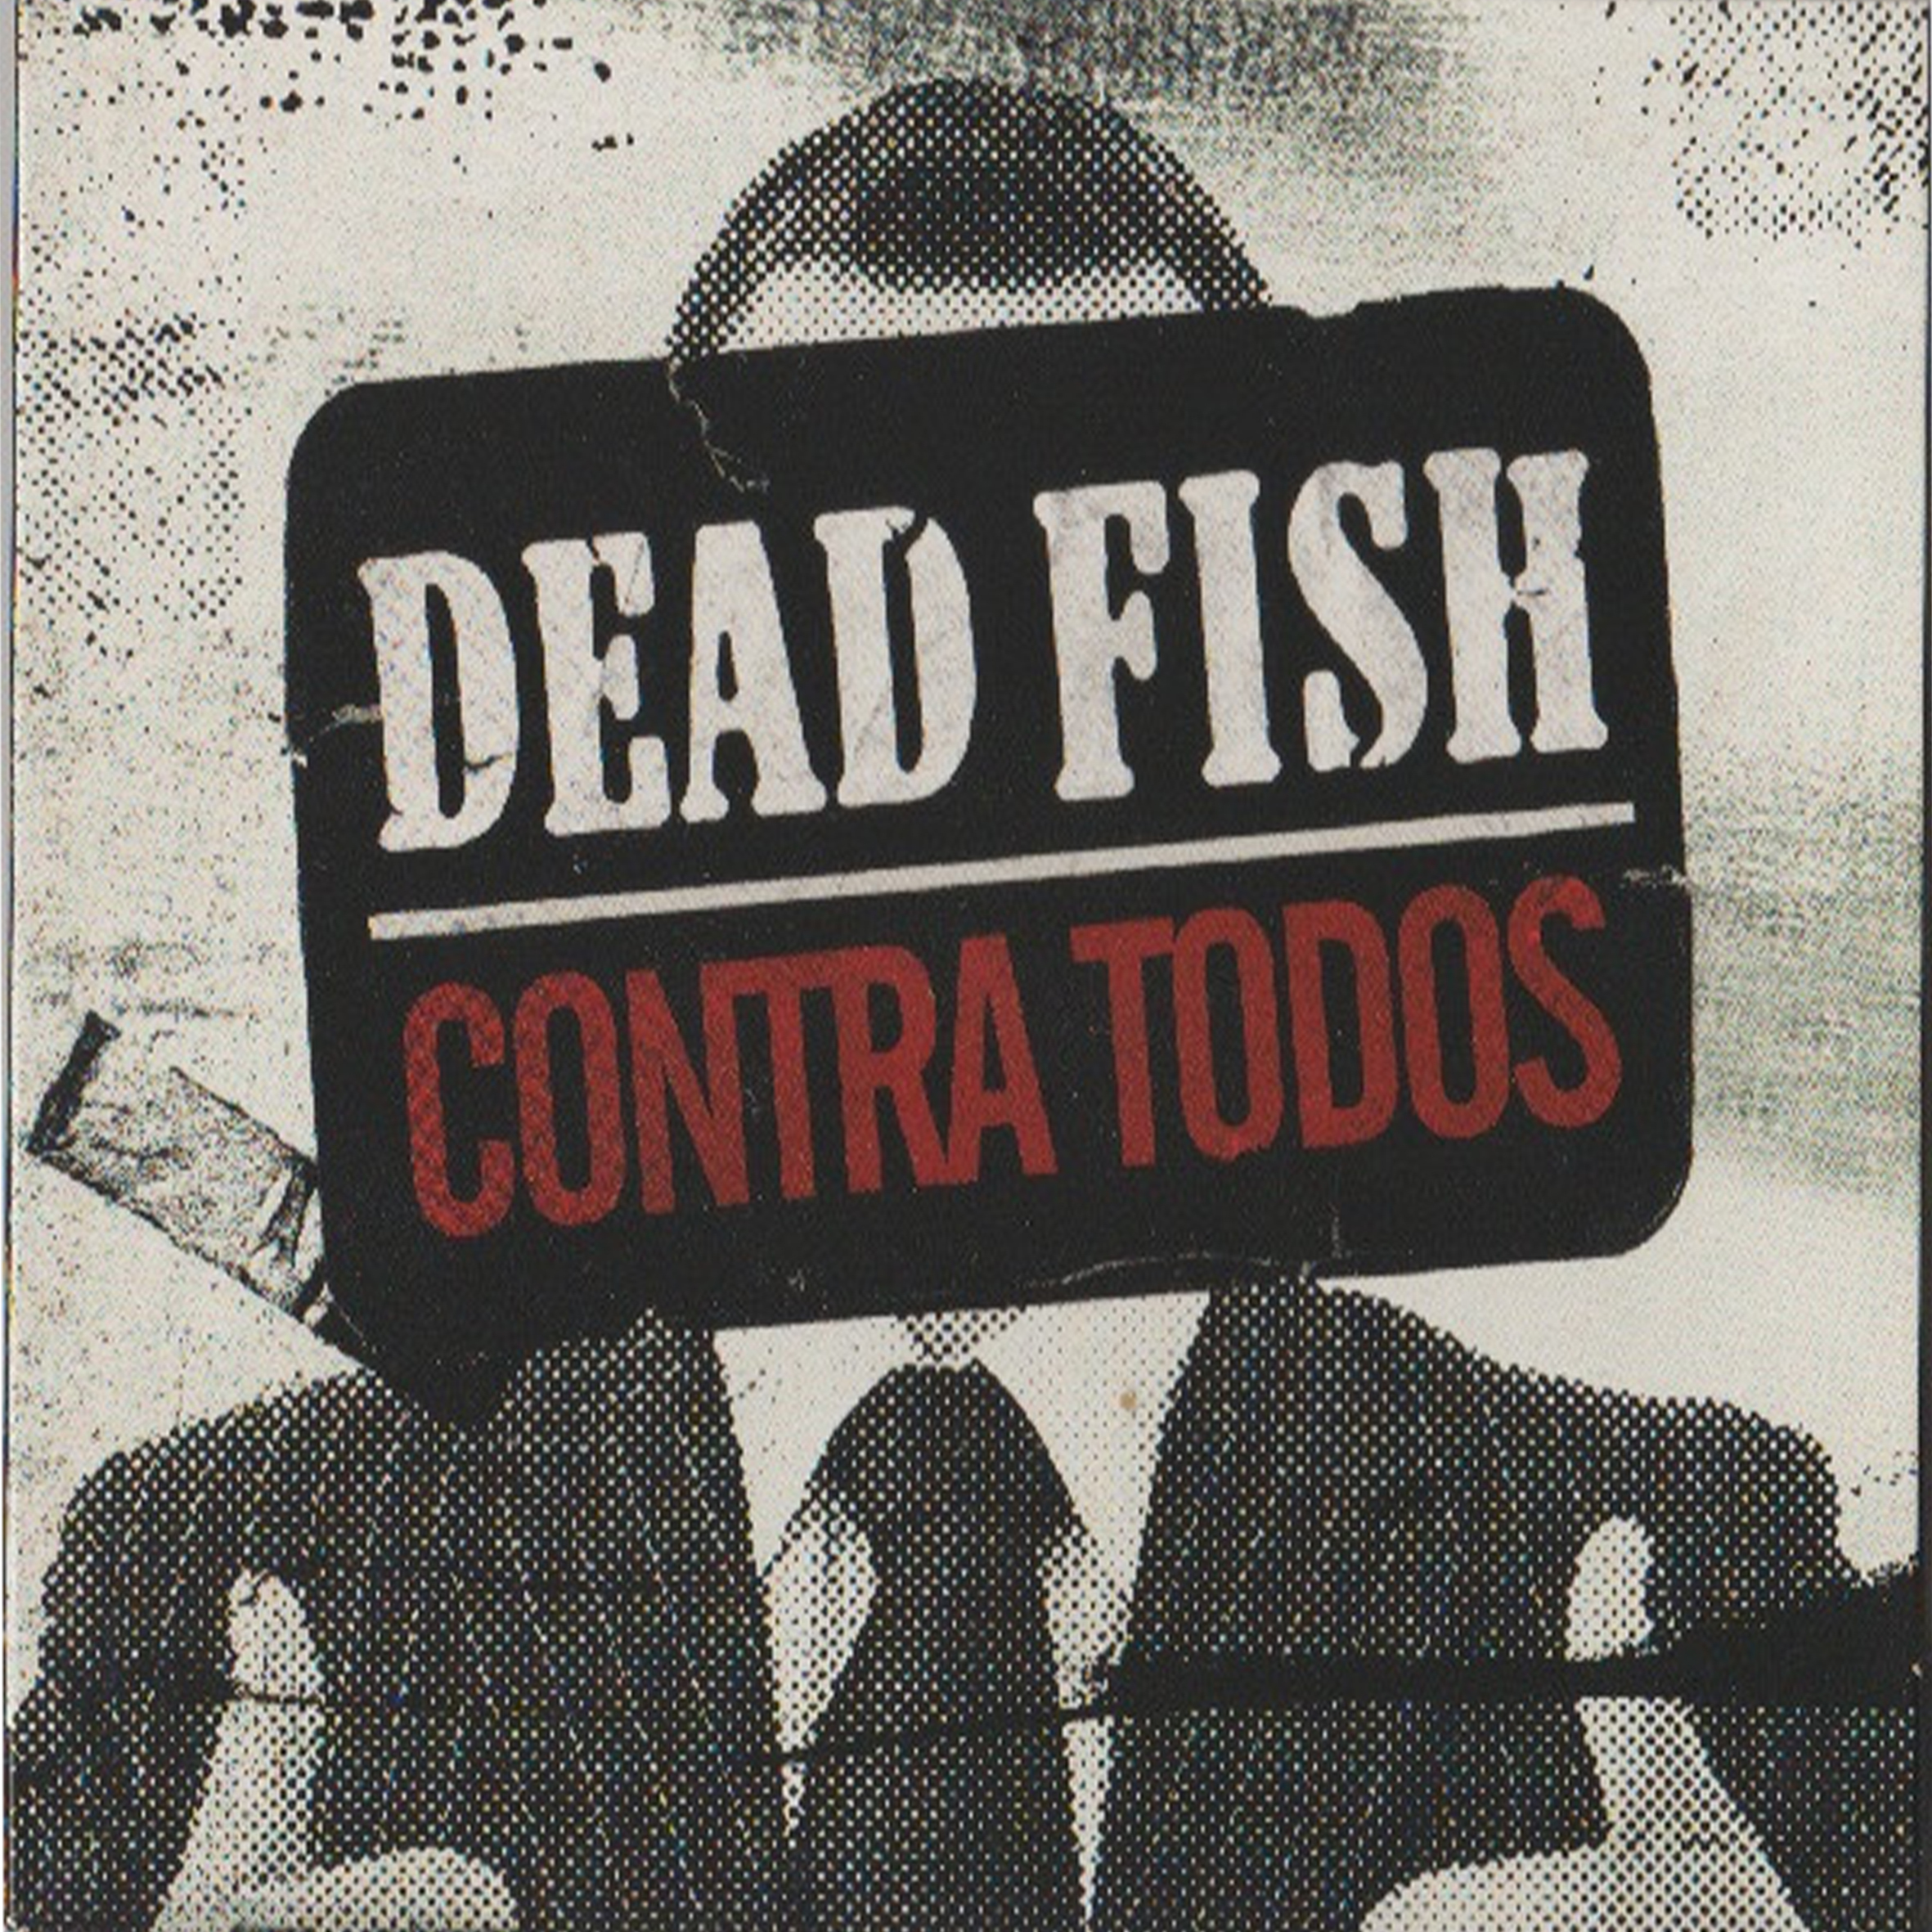 CD - Dead Fish - Contra Todos